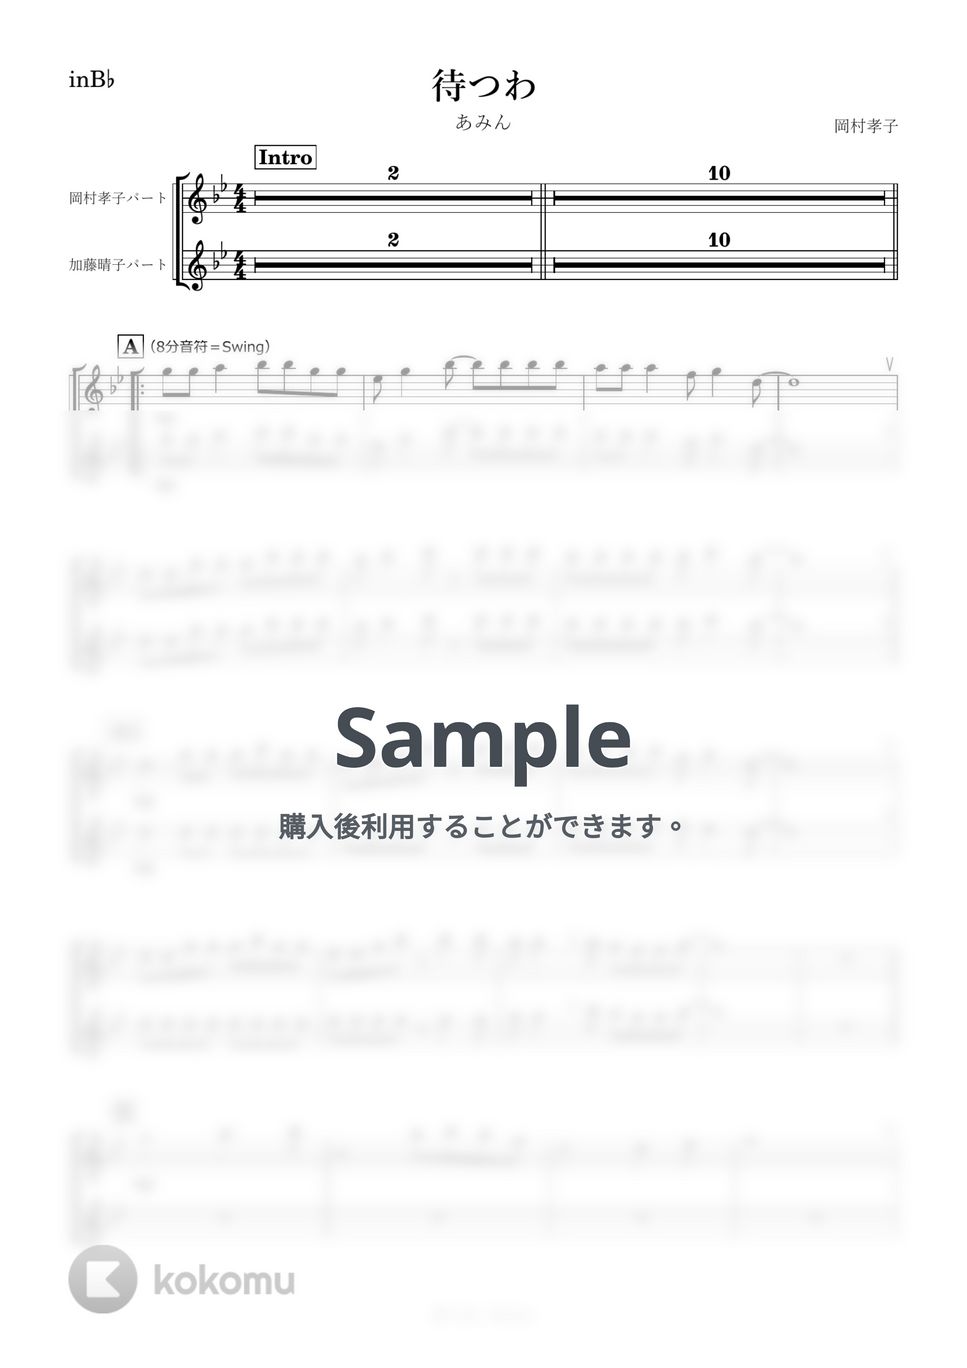 あみん - 待つわ (B♭) by kanamusic